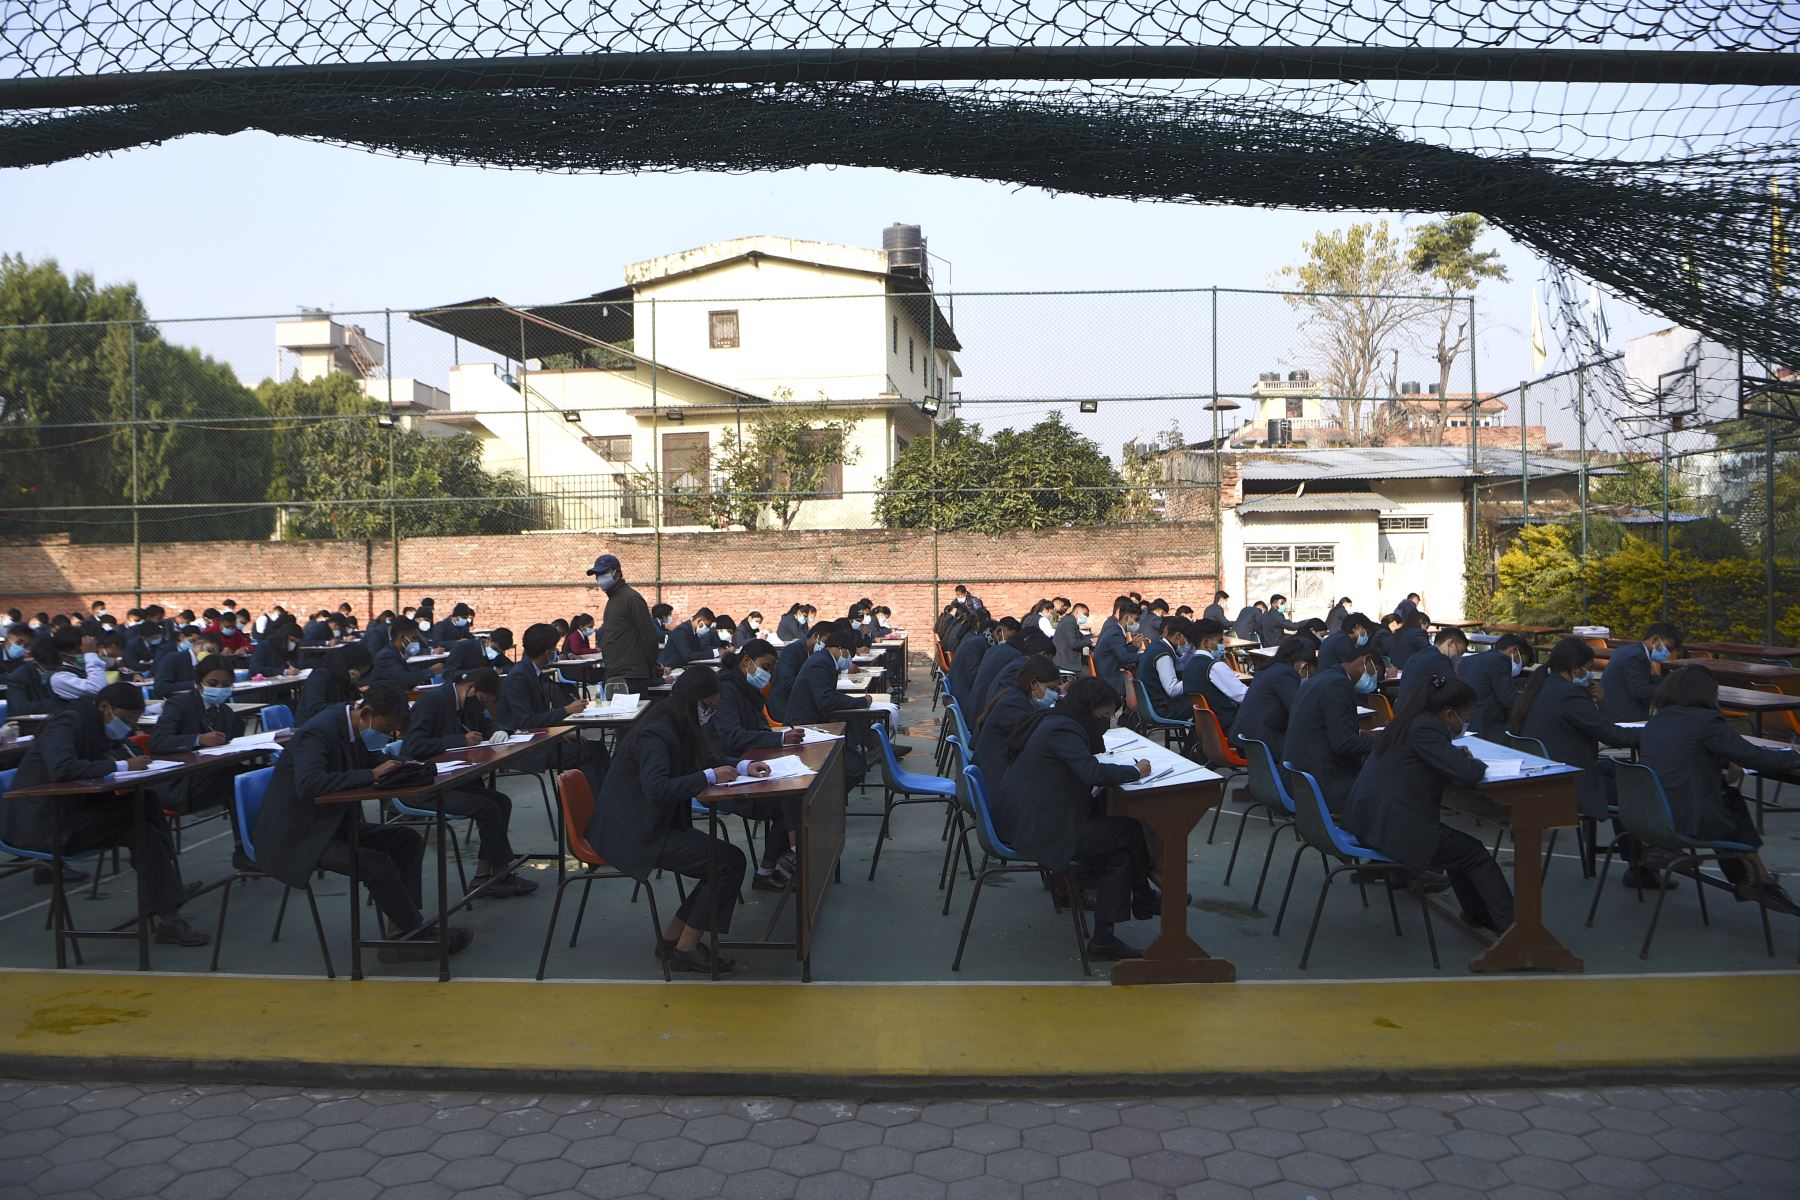 Estudiantes que usan mascarillas rinden el examen en el patio de la escuela en medio de la pandemia del Covid-19 en Katmandú. Foto: AFP